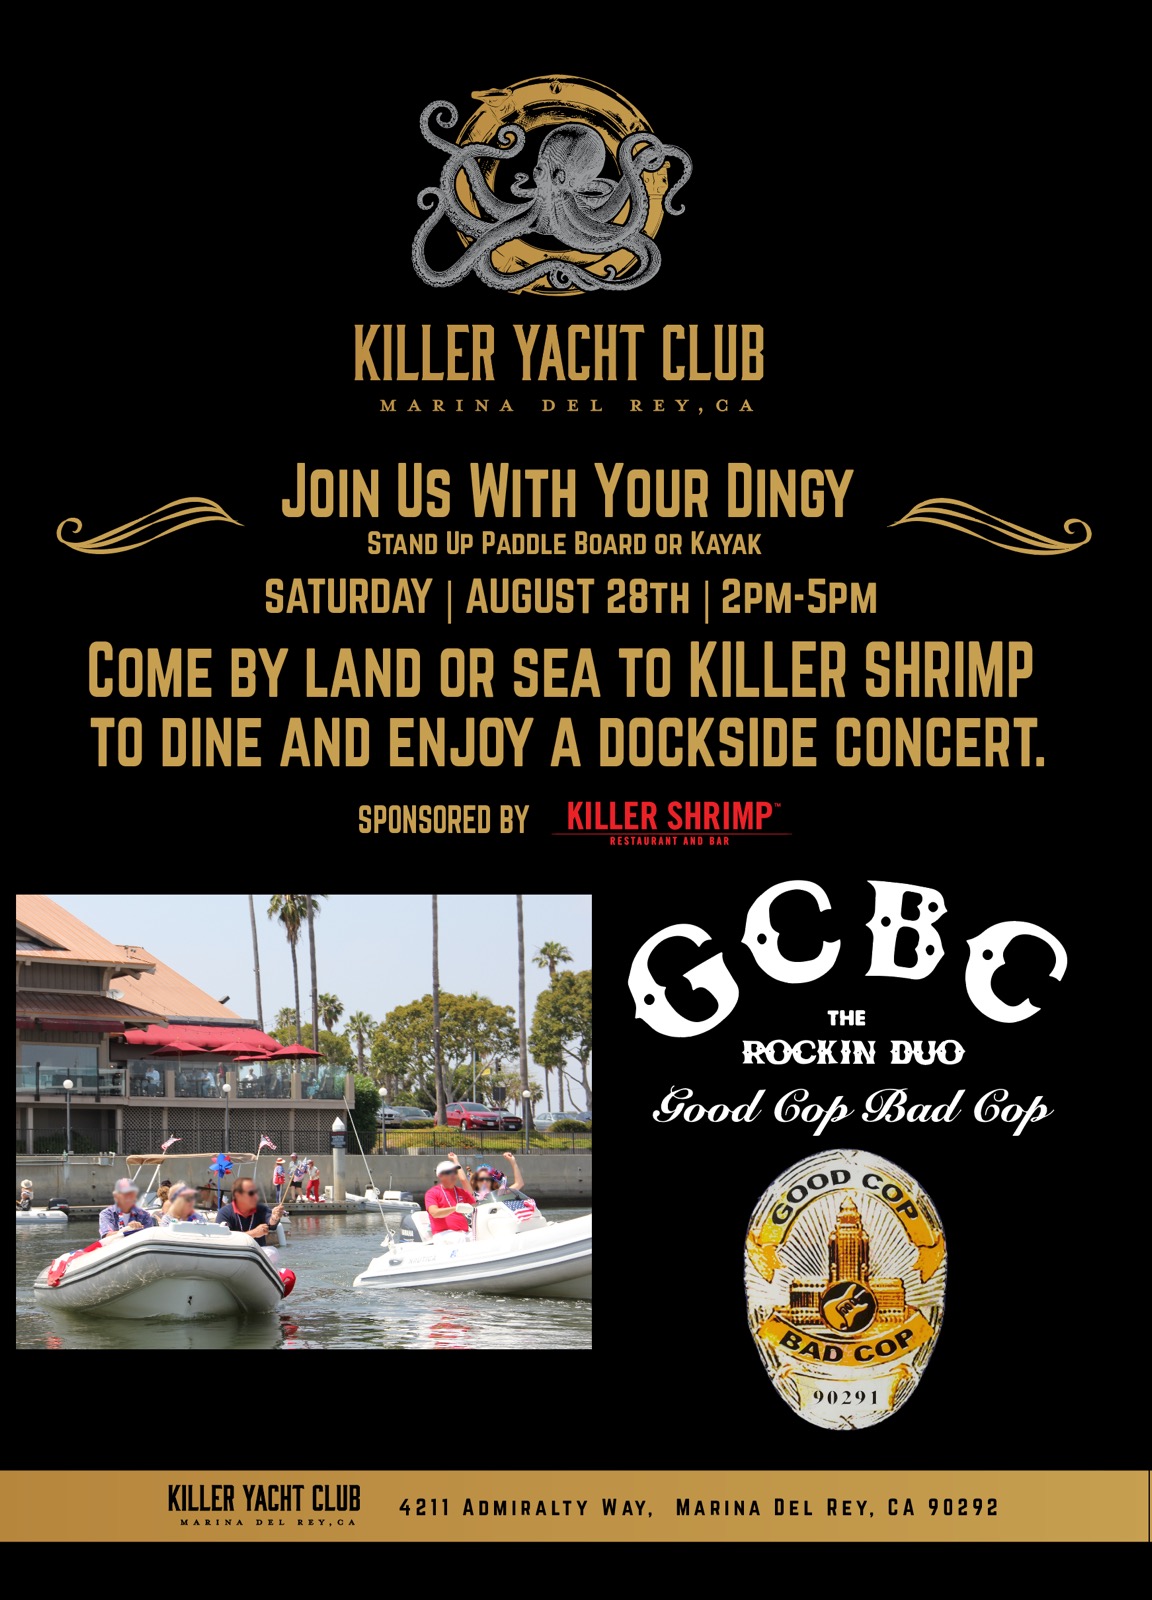 Flyer for dockside concert at Kiler Shrimp